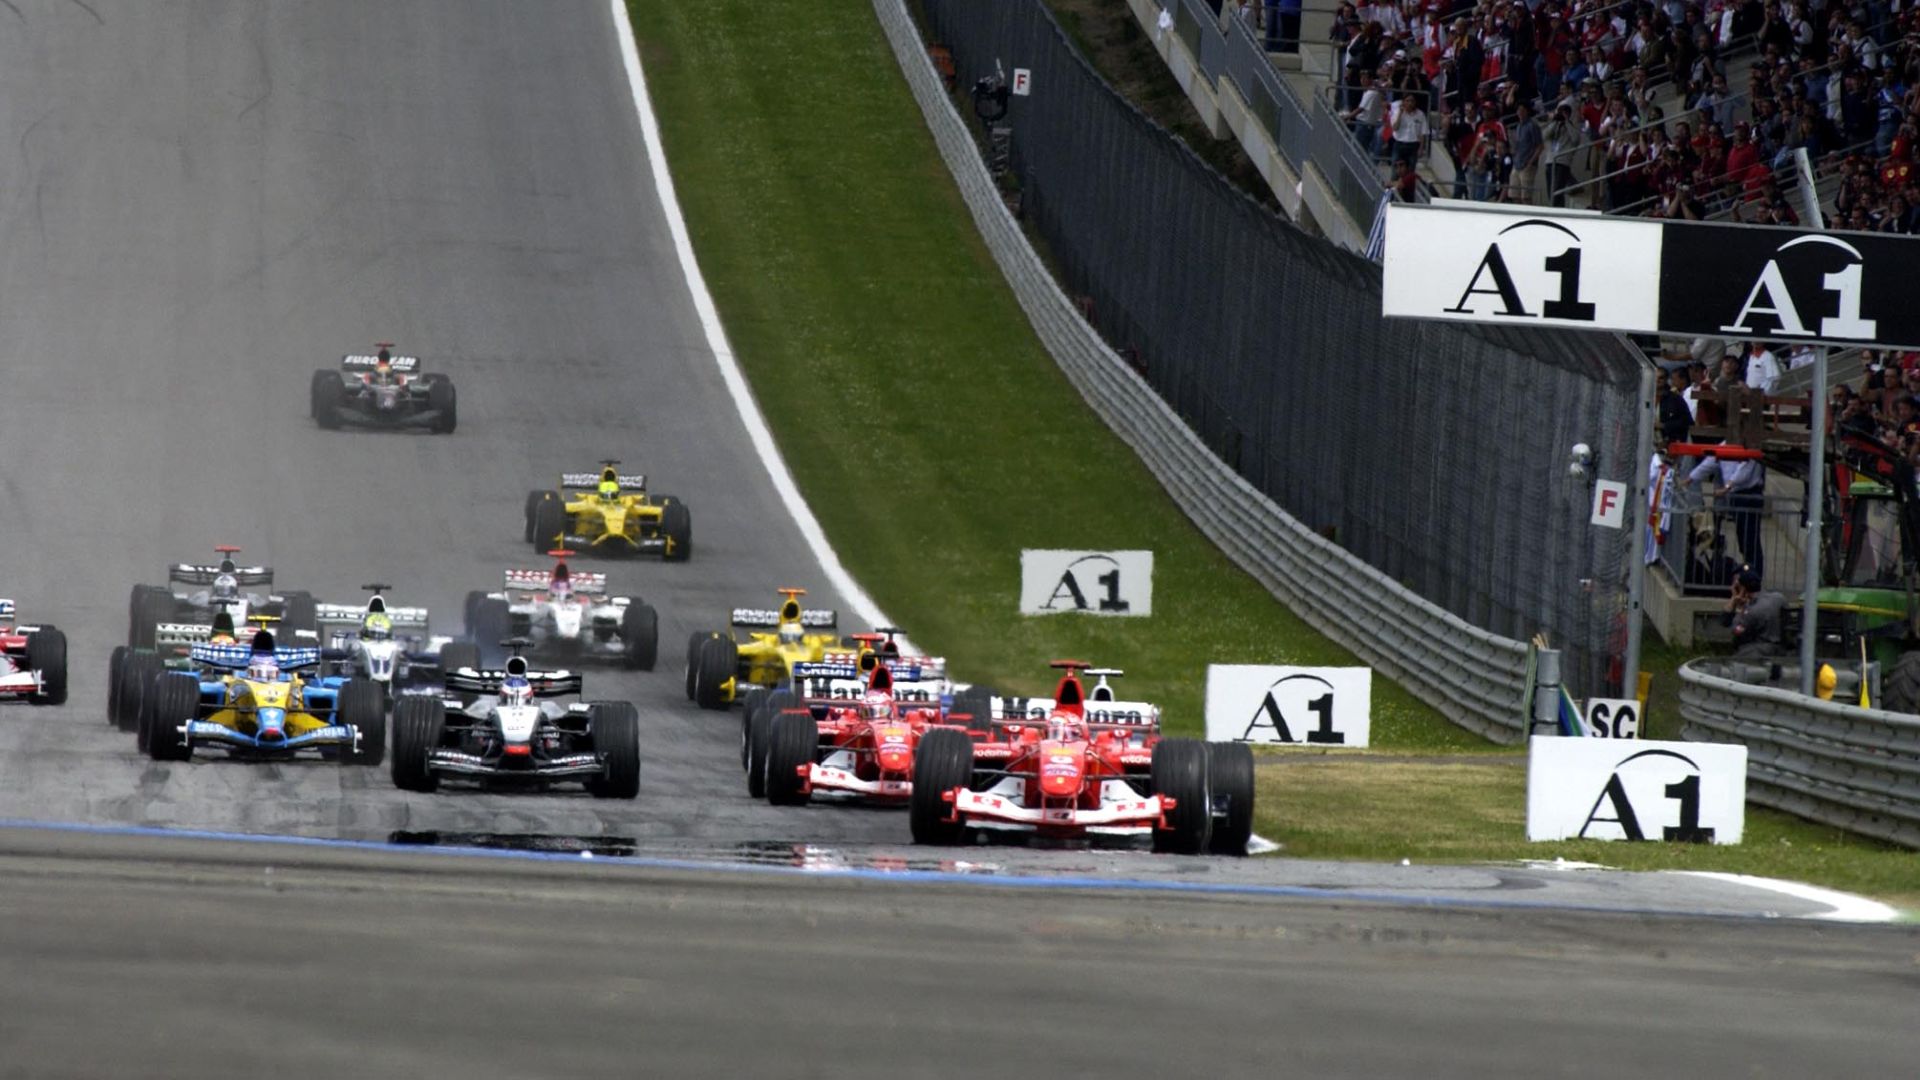 Austrian Grand Prix 2003